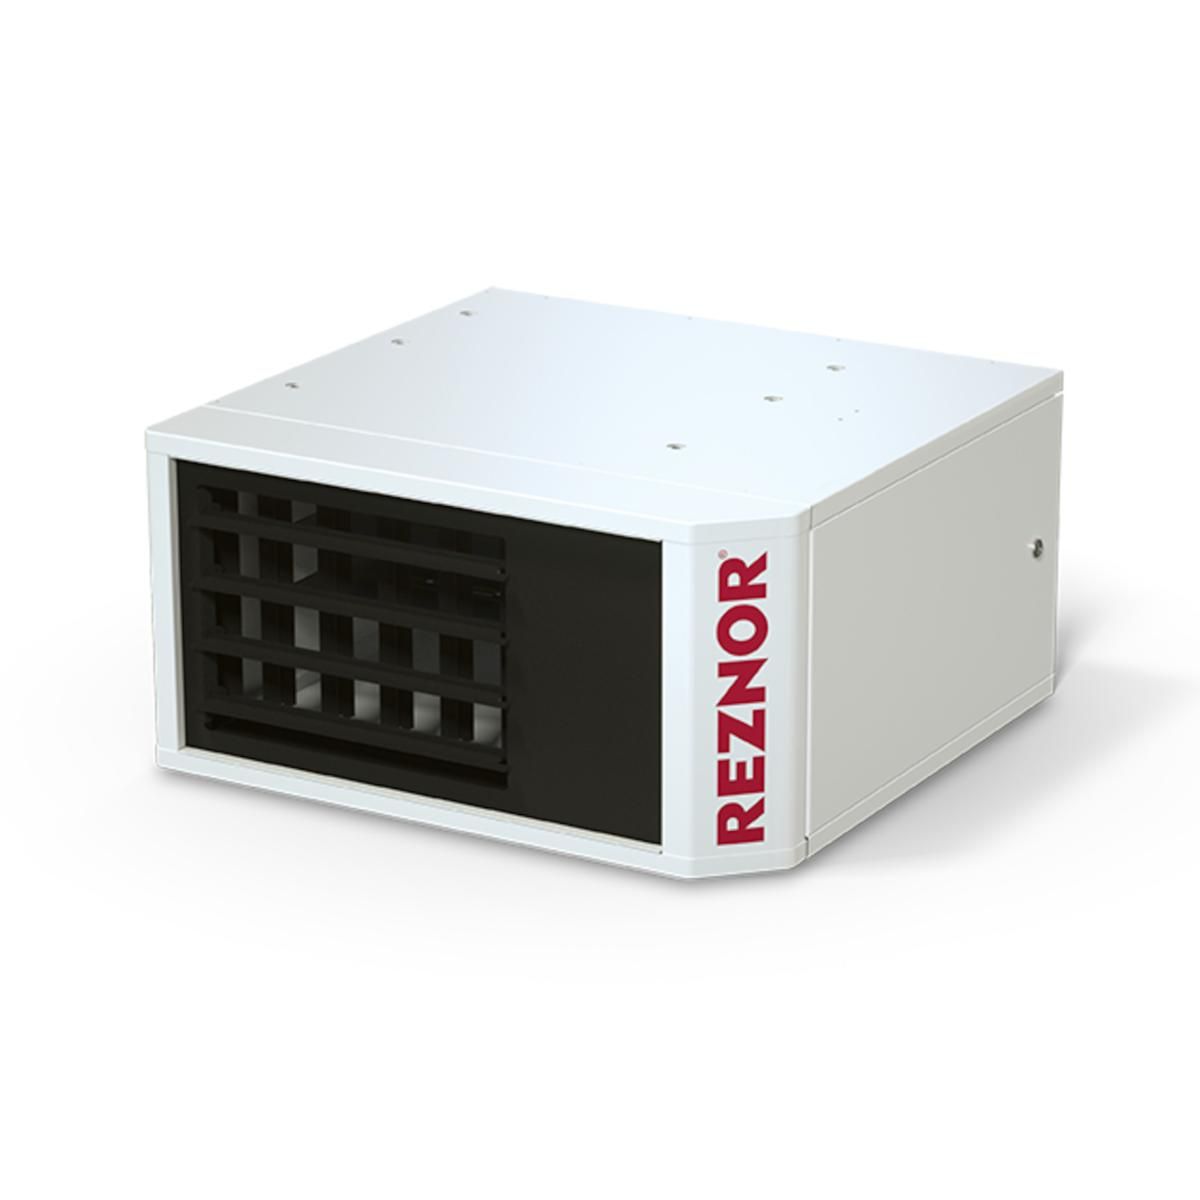 Reznor UDX Power Vent Unit Heaters